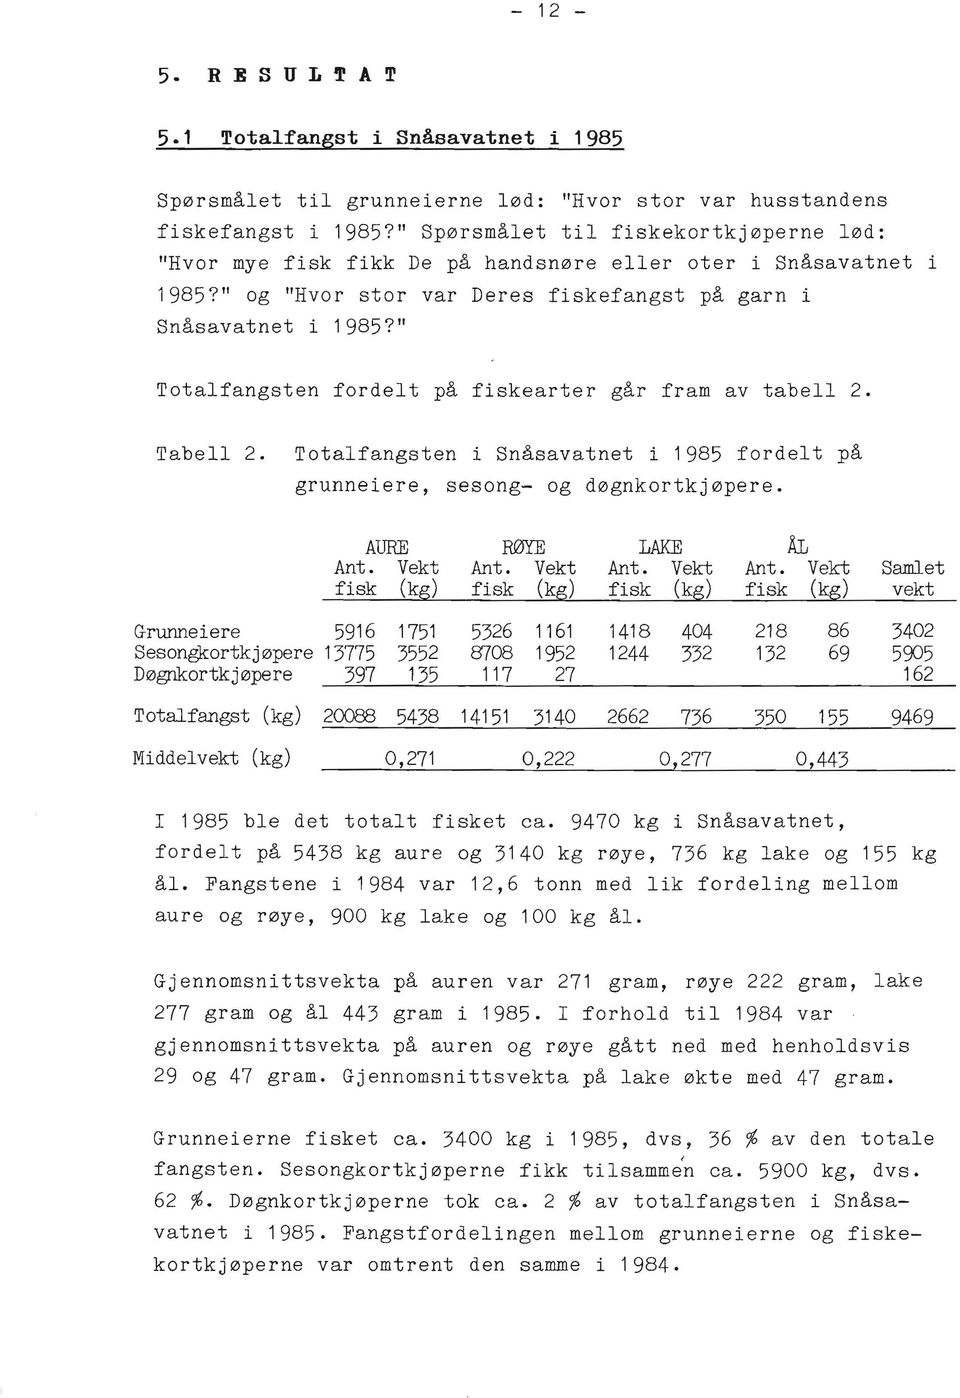 " Totalfangsten fordelt på fiskearter går fram av tabell 2. Tabell 2. Totalfangsten i Snåsavatnet i 1985 fordelt på grunneiere, sesong- og døgnkortkjøpere. AURE RØYE LAKE ÅL Ant. Vekt Ant.